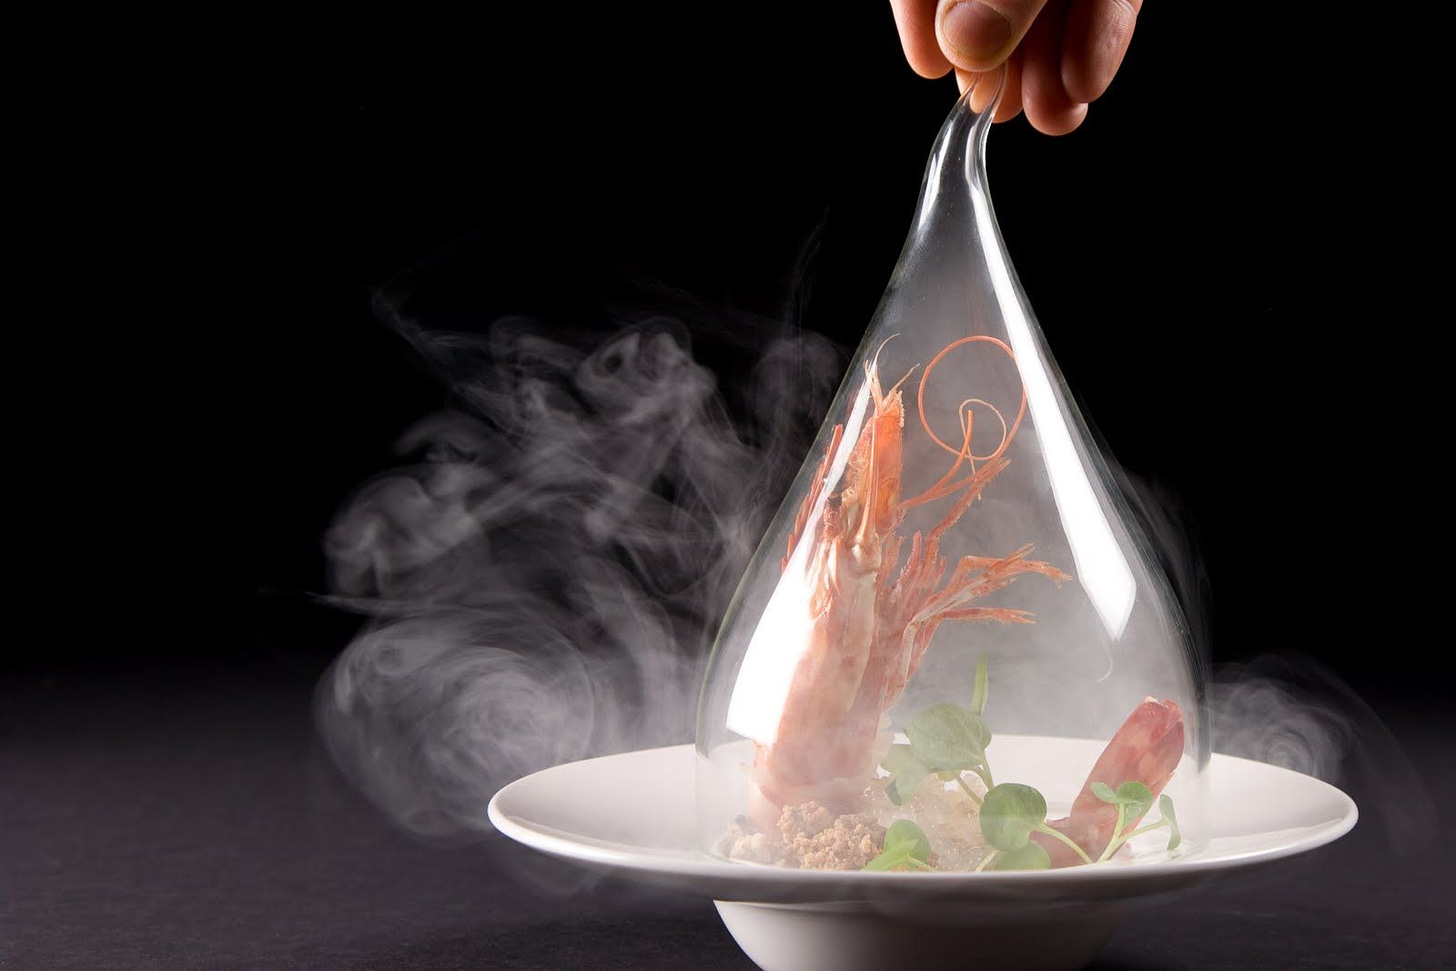 smoke molecular gastronomy - Google Search | Molecular gastronomy,  Molecular food, Molecular gastronomy recipes